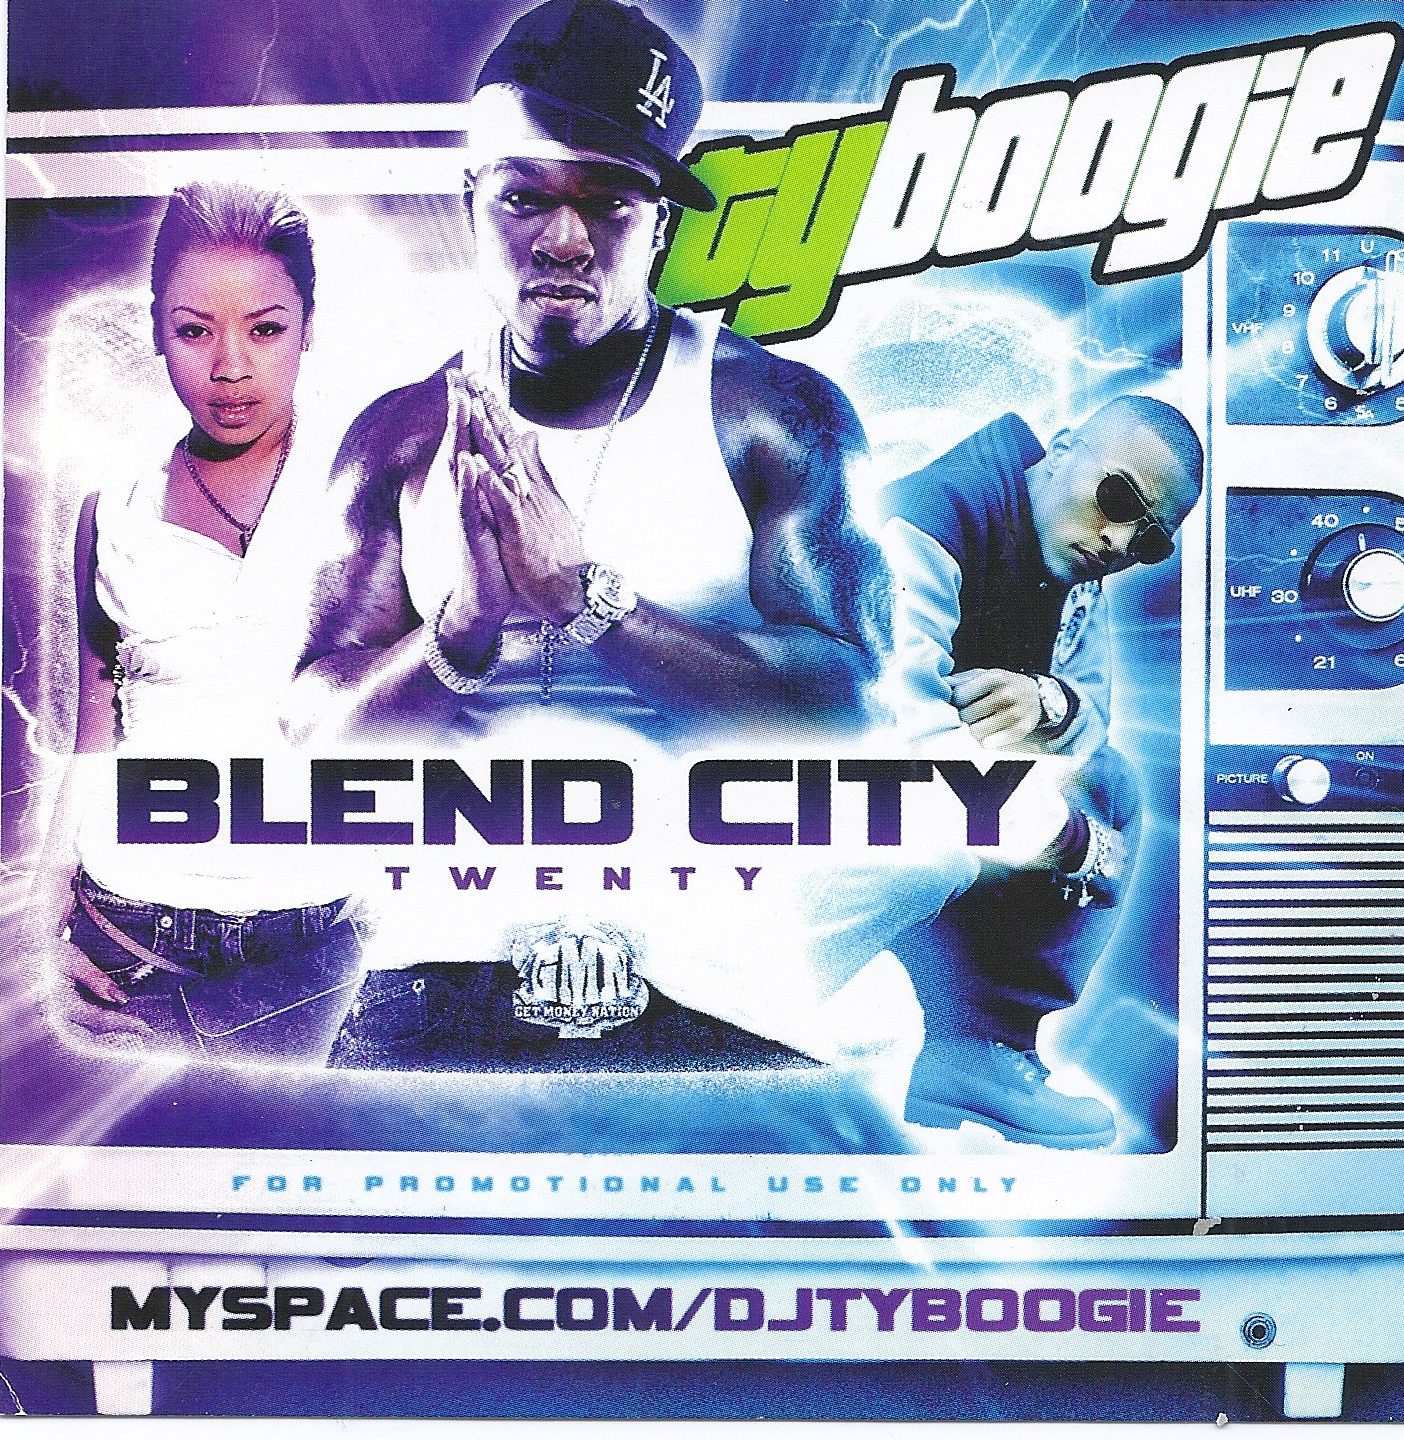 DJ TY BOOGIE, BLEND CITY 20, HIP HOP, MIX CD, MIX TAPE